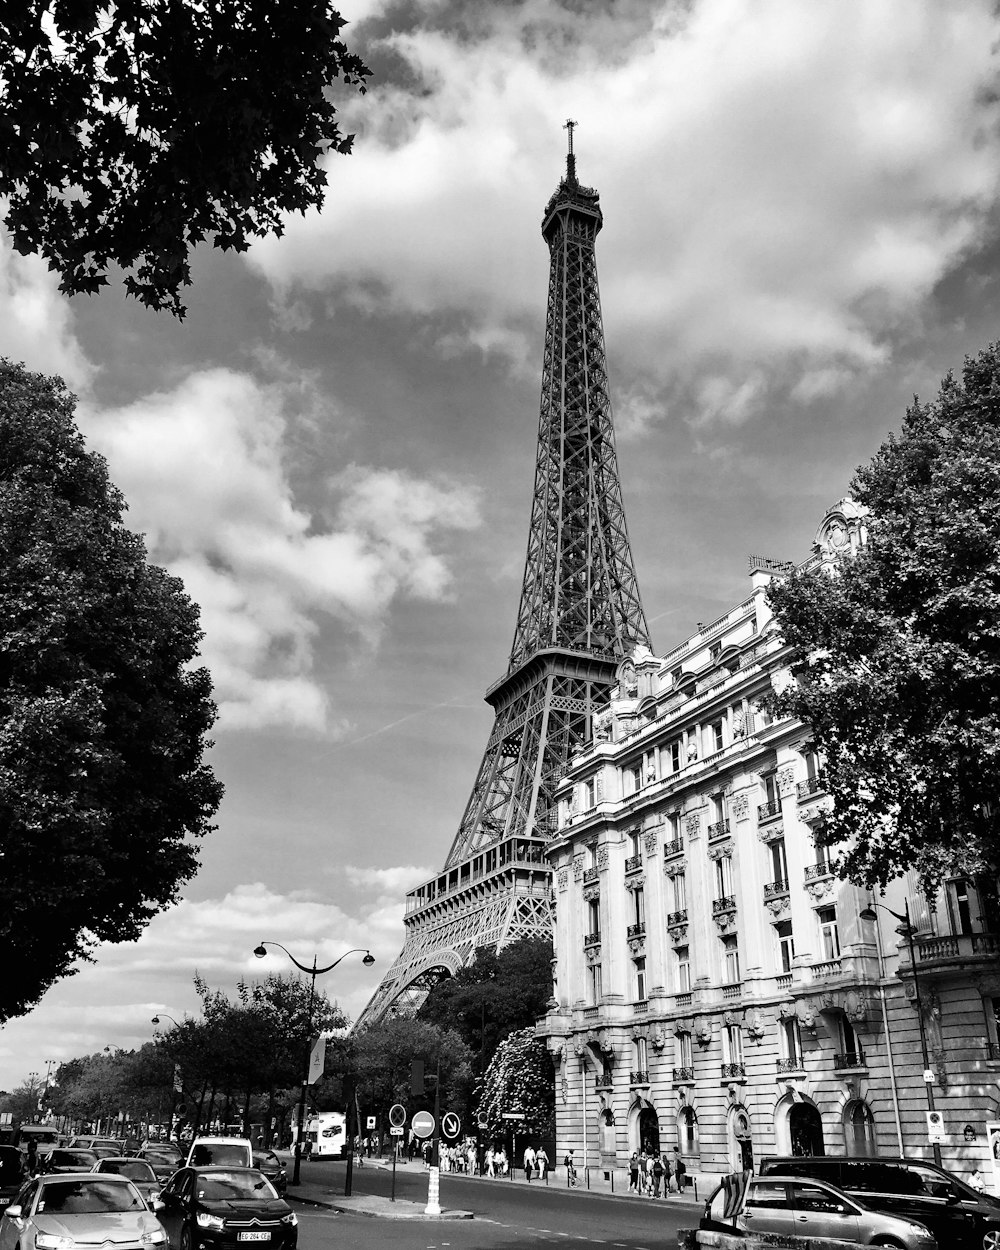 프랑스 파리의 에펠탑